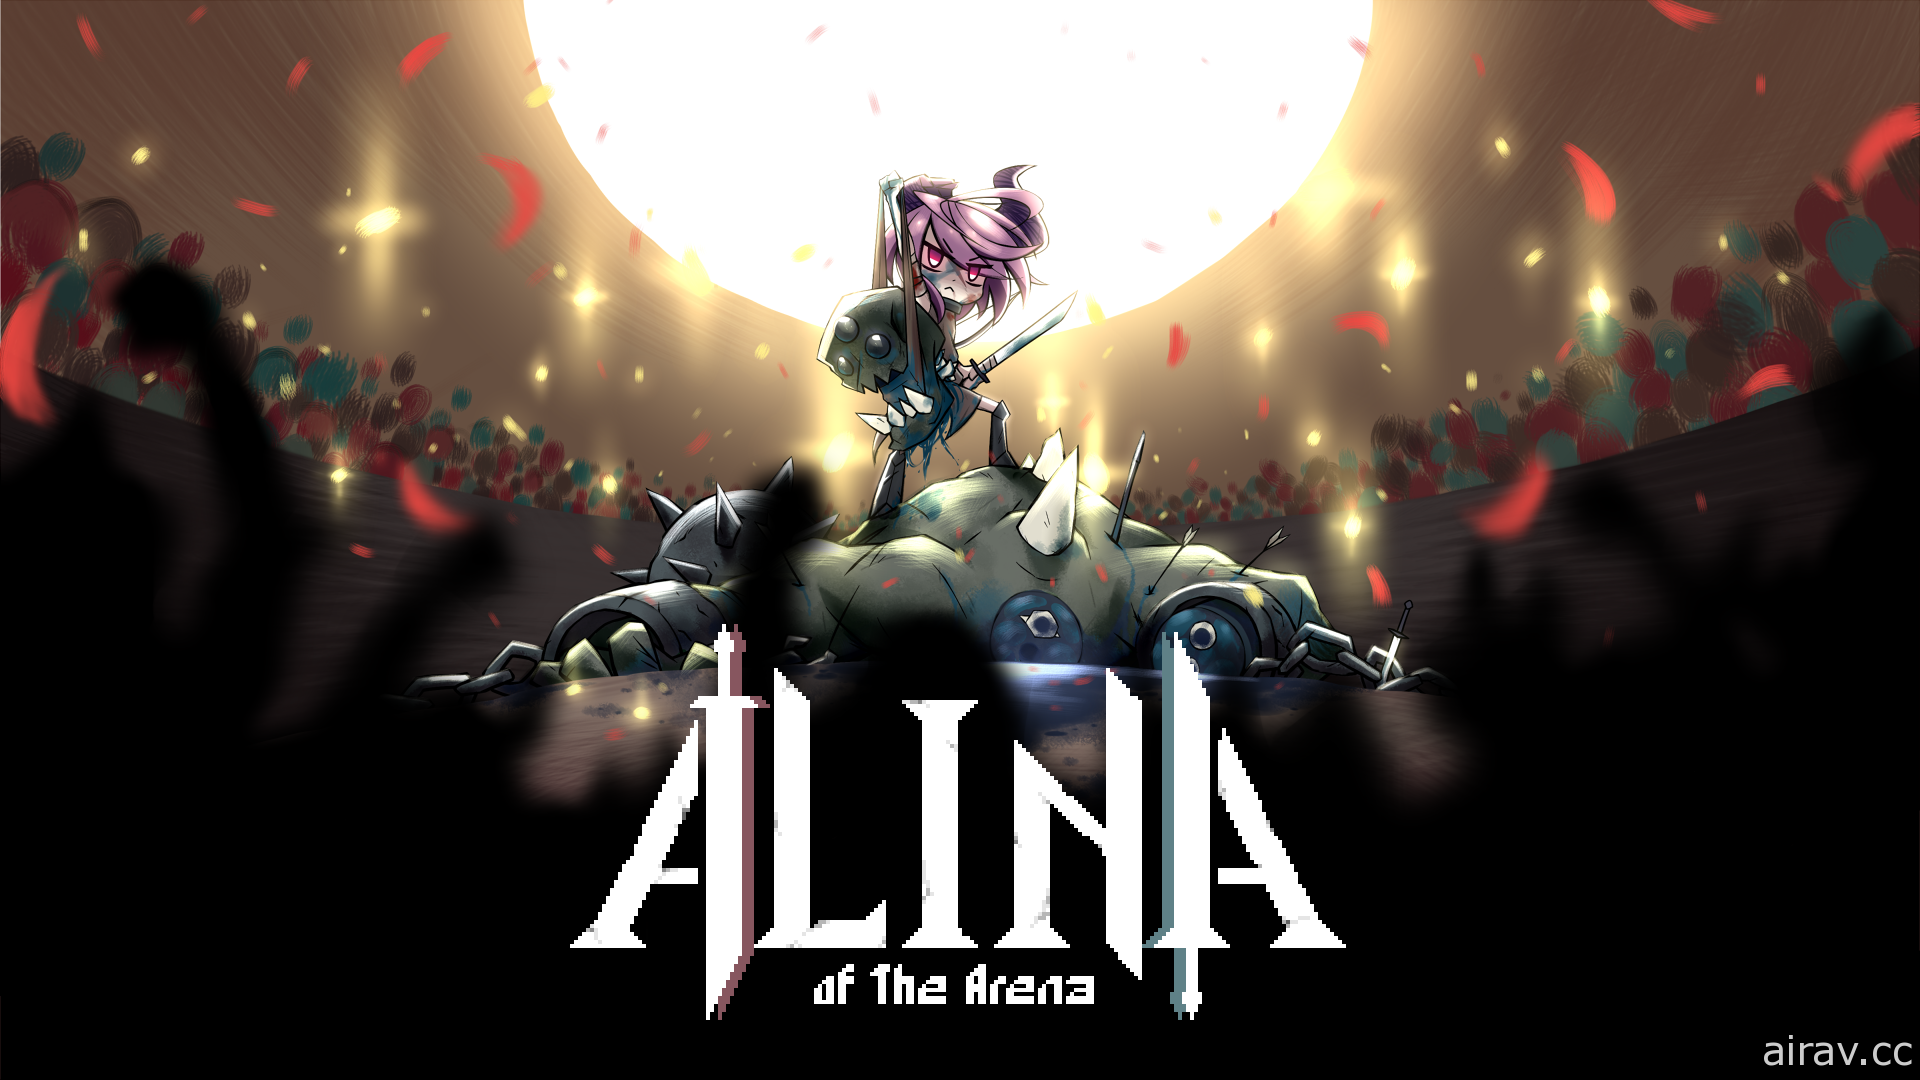 台灣團隊新作《鬥技場的阿利娜》公開遊戲預告片 預告 10 月開放試玩版